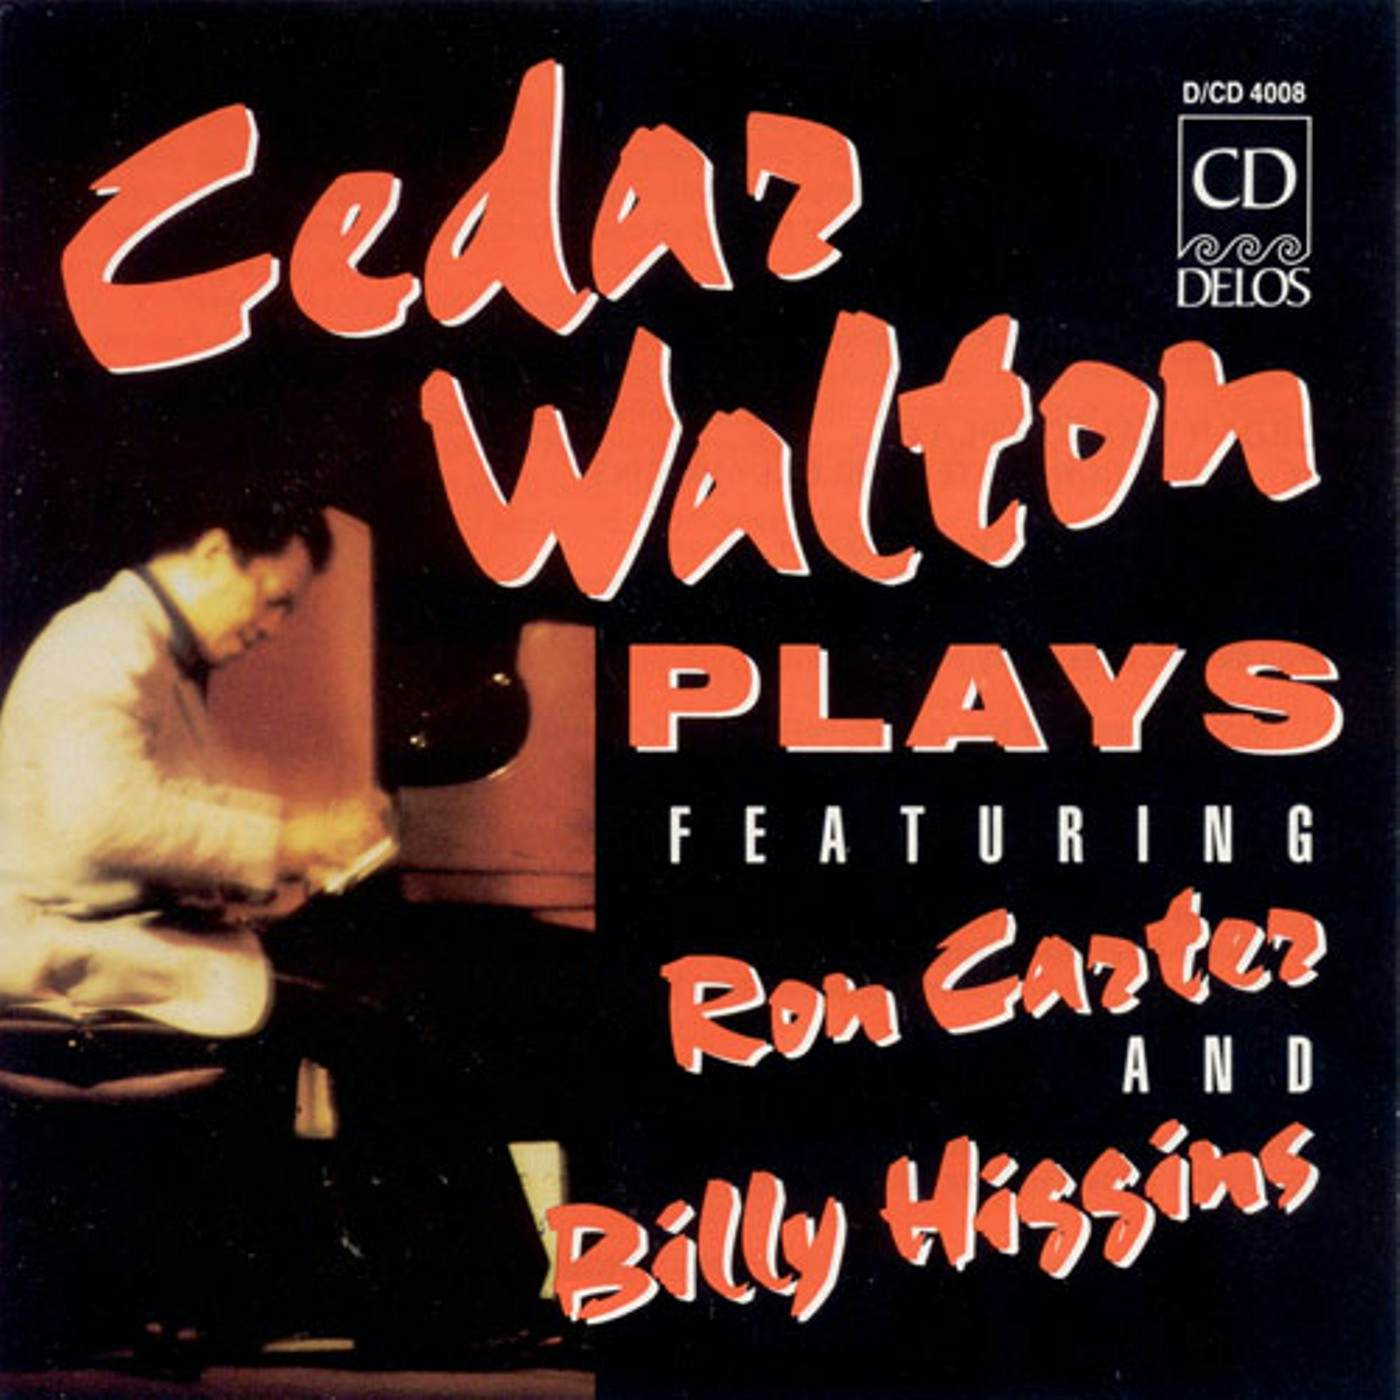 CEDAR WALTON PLAYS CD